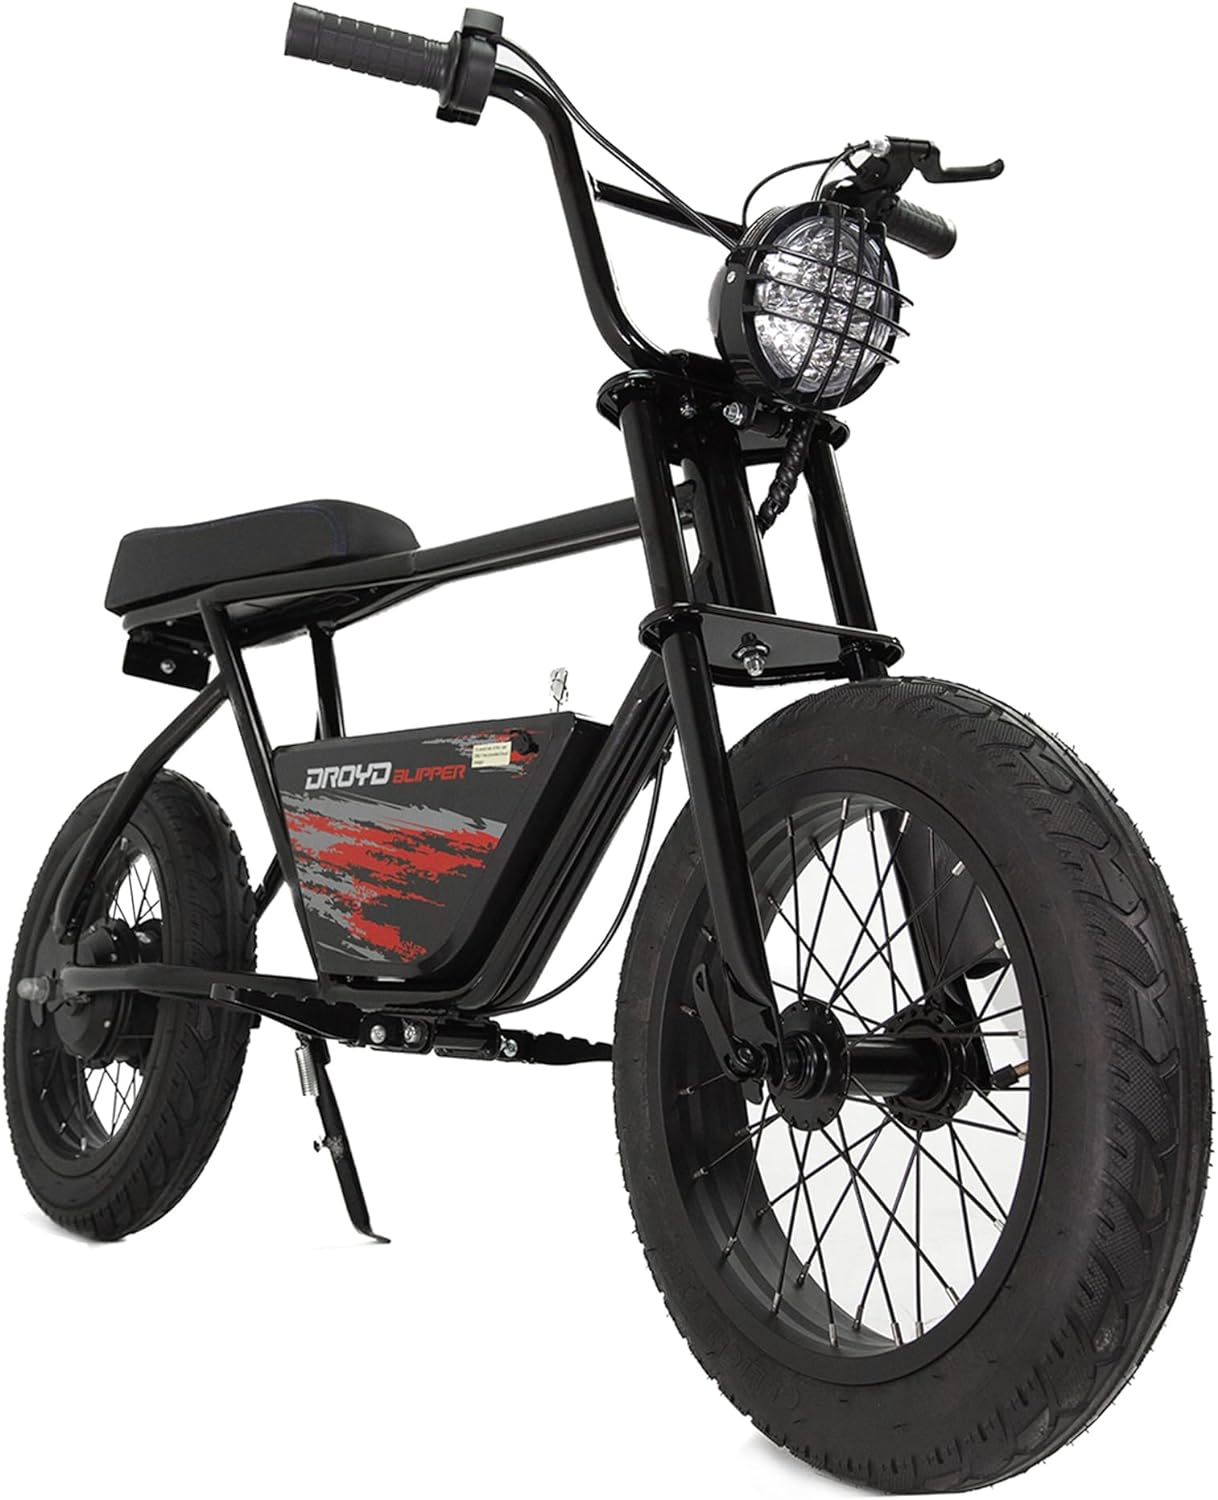 BLACK - Droyd Blipper Electric Mini Bike - Electric Bike for Kids Ages 13 & Up - 250W Mini Bike w 12.5MPH up to 12.5 Miles - Electric Bike for Kids up to 60 Mins Run Time, 16in Tire, 24V 10Ah Battery